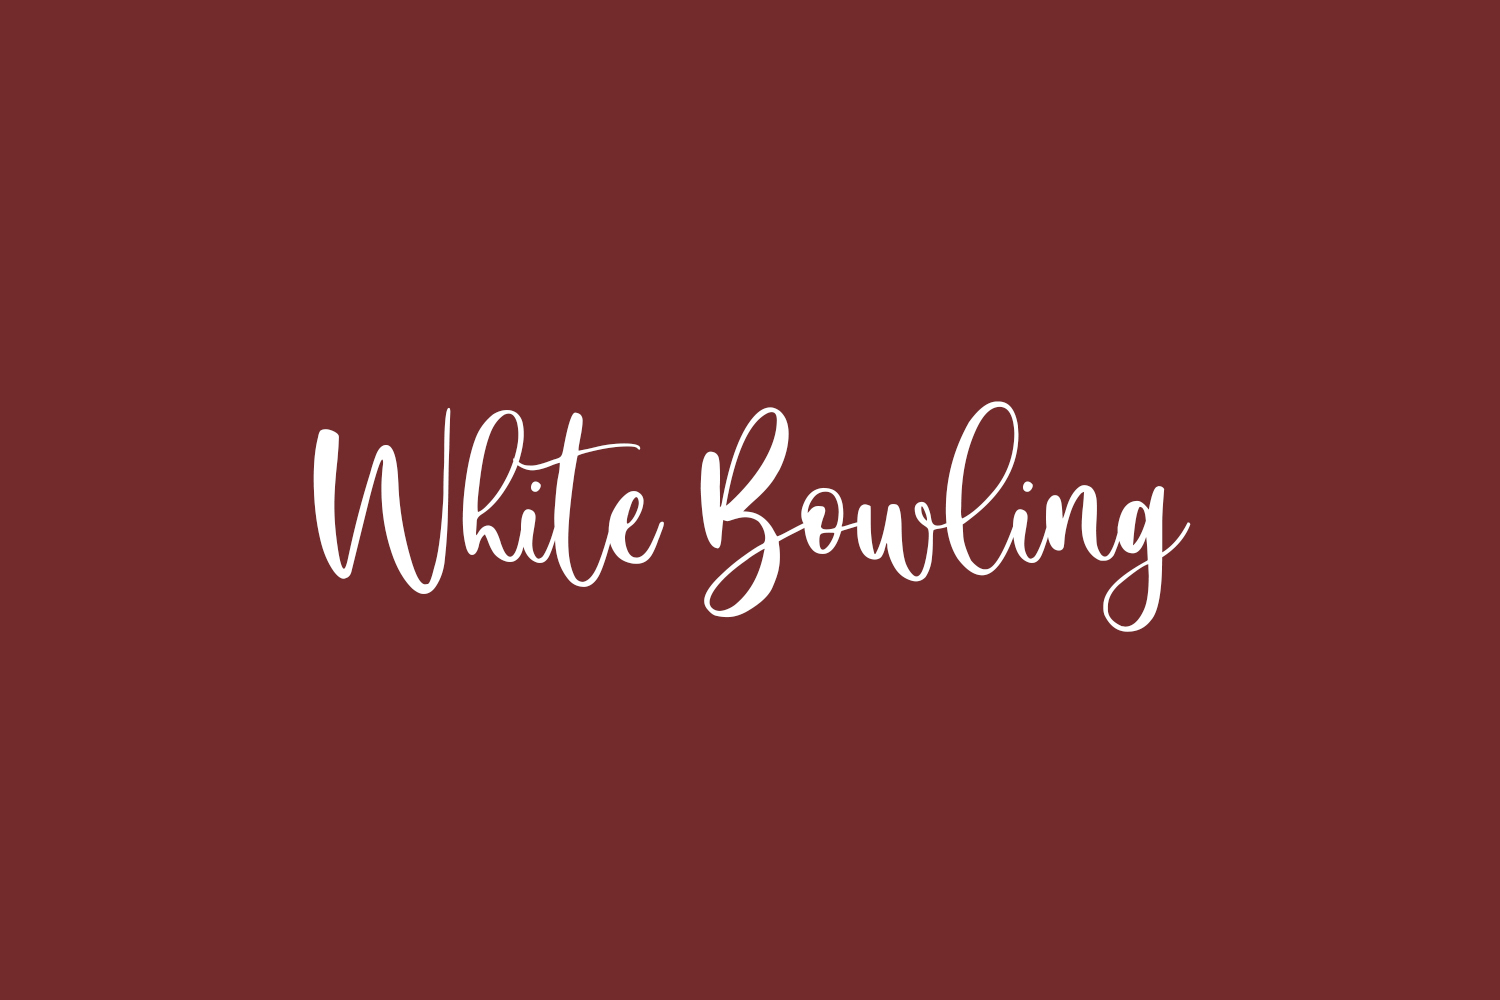 White Bowling Free Font